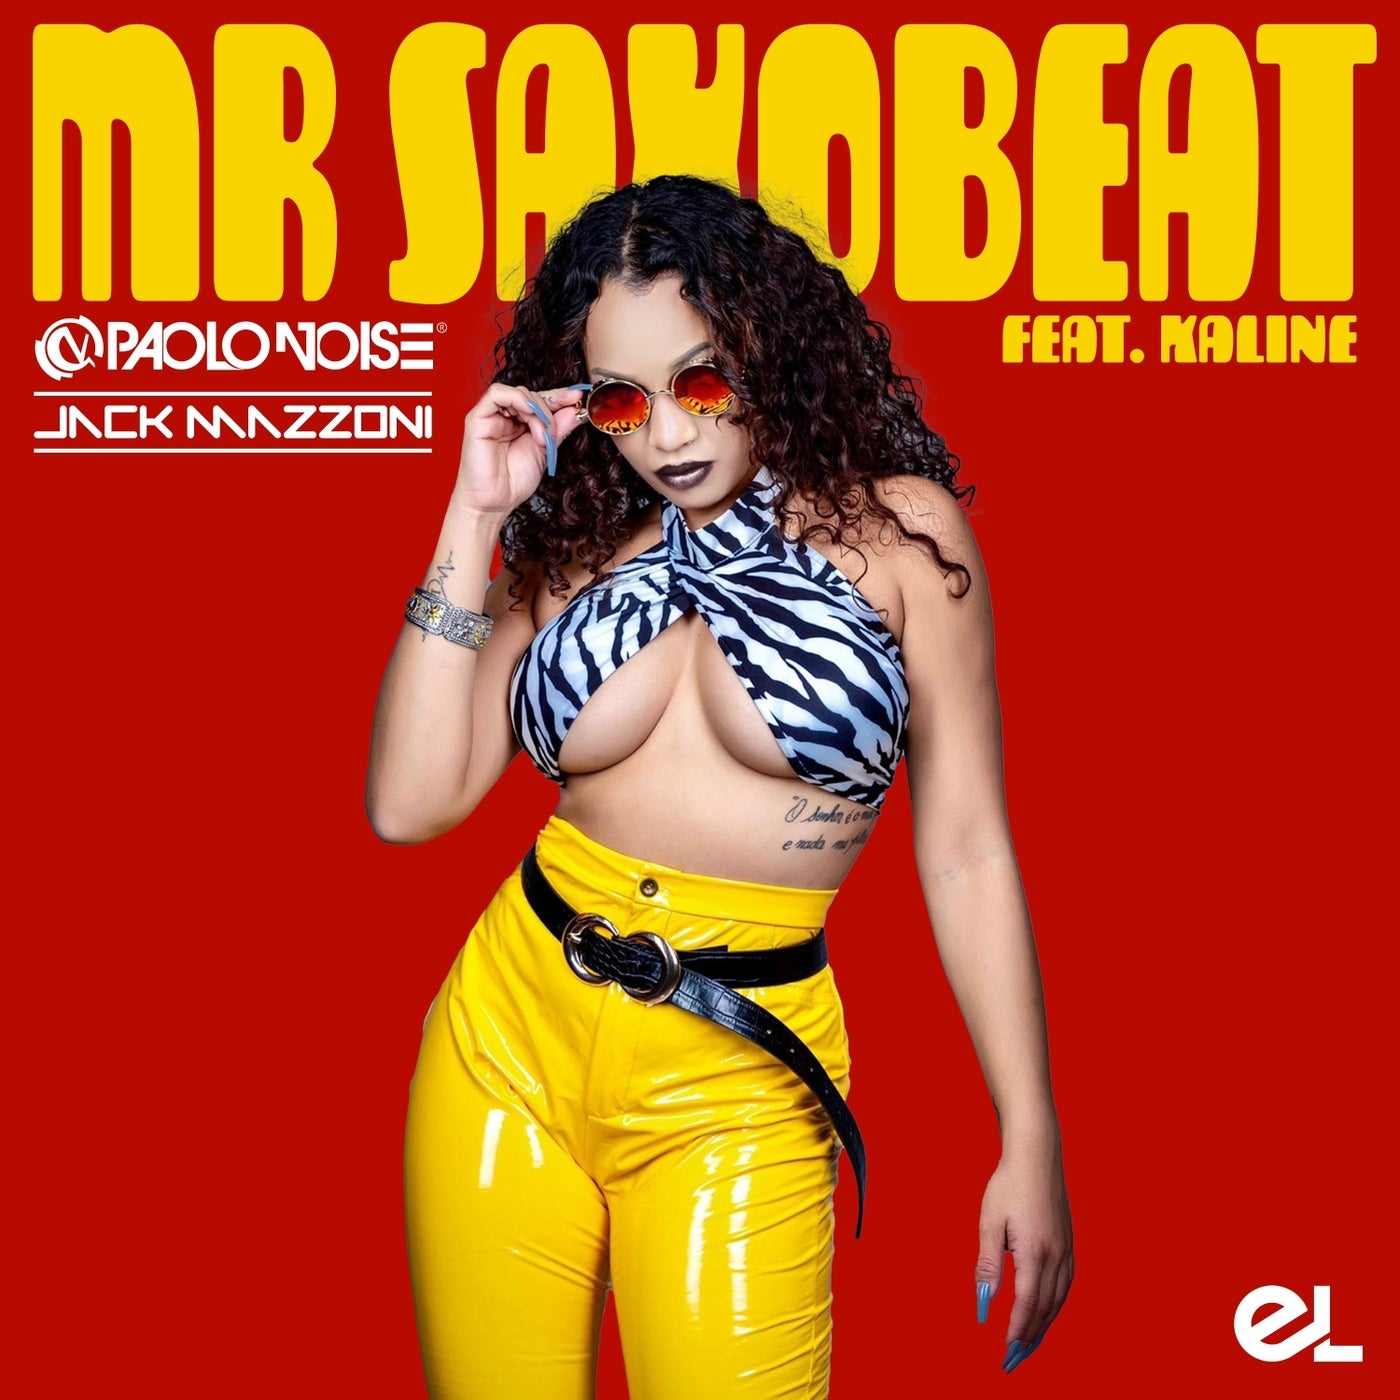 Mr. Saxobeat (Extended Mix)